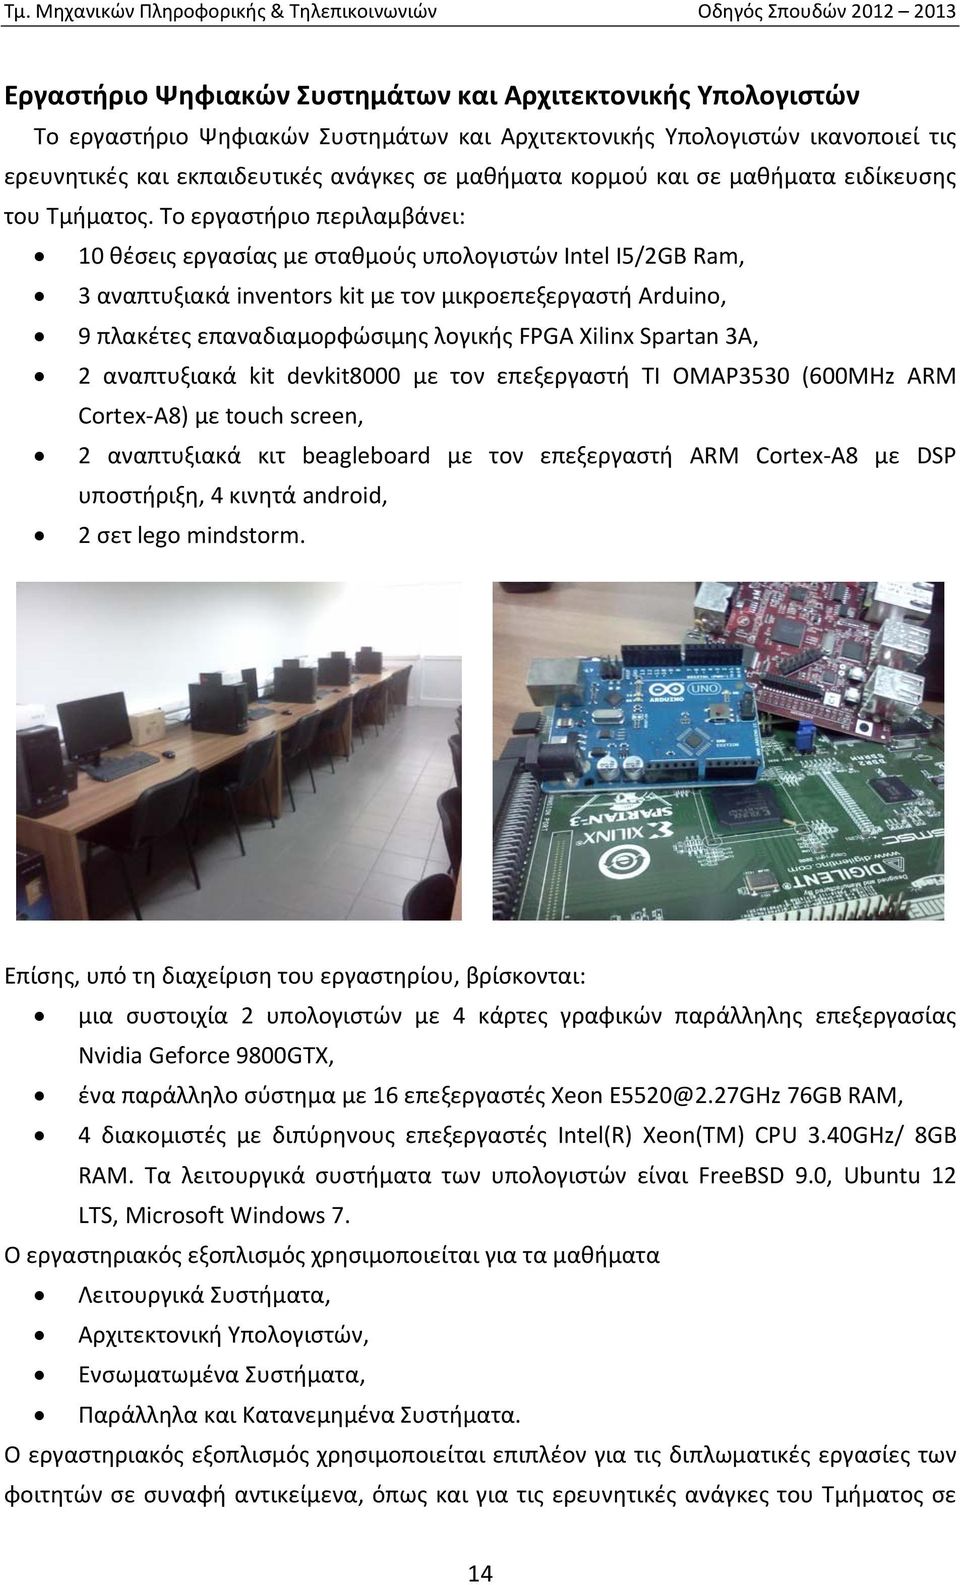 Το εργαστήριο περιλαμβάνει: 10 θέσεις εργασίας με σταθμούς υπολογιστών Intel I5/2GB Ram, 3 αναπτυξιακά inventors kit με τον μικροεπεξεργαστή Arduino, 9 πλακέτες επαναδιαμορφώσιμης λογικής FPGA Xilinx